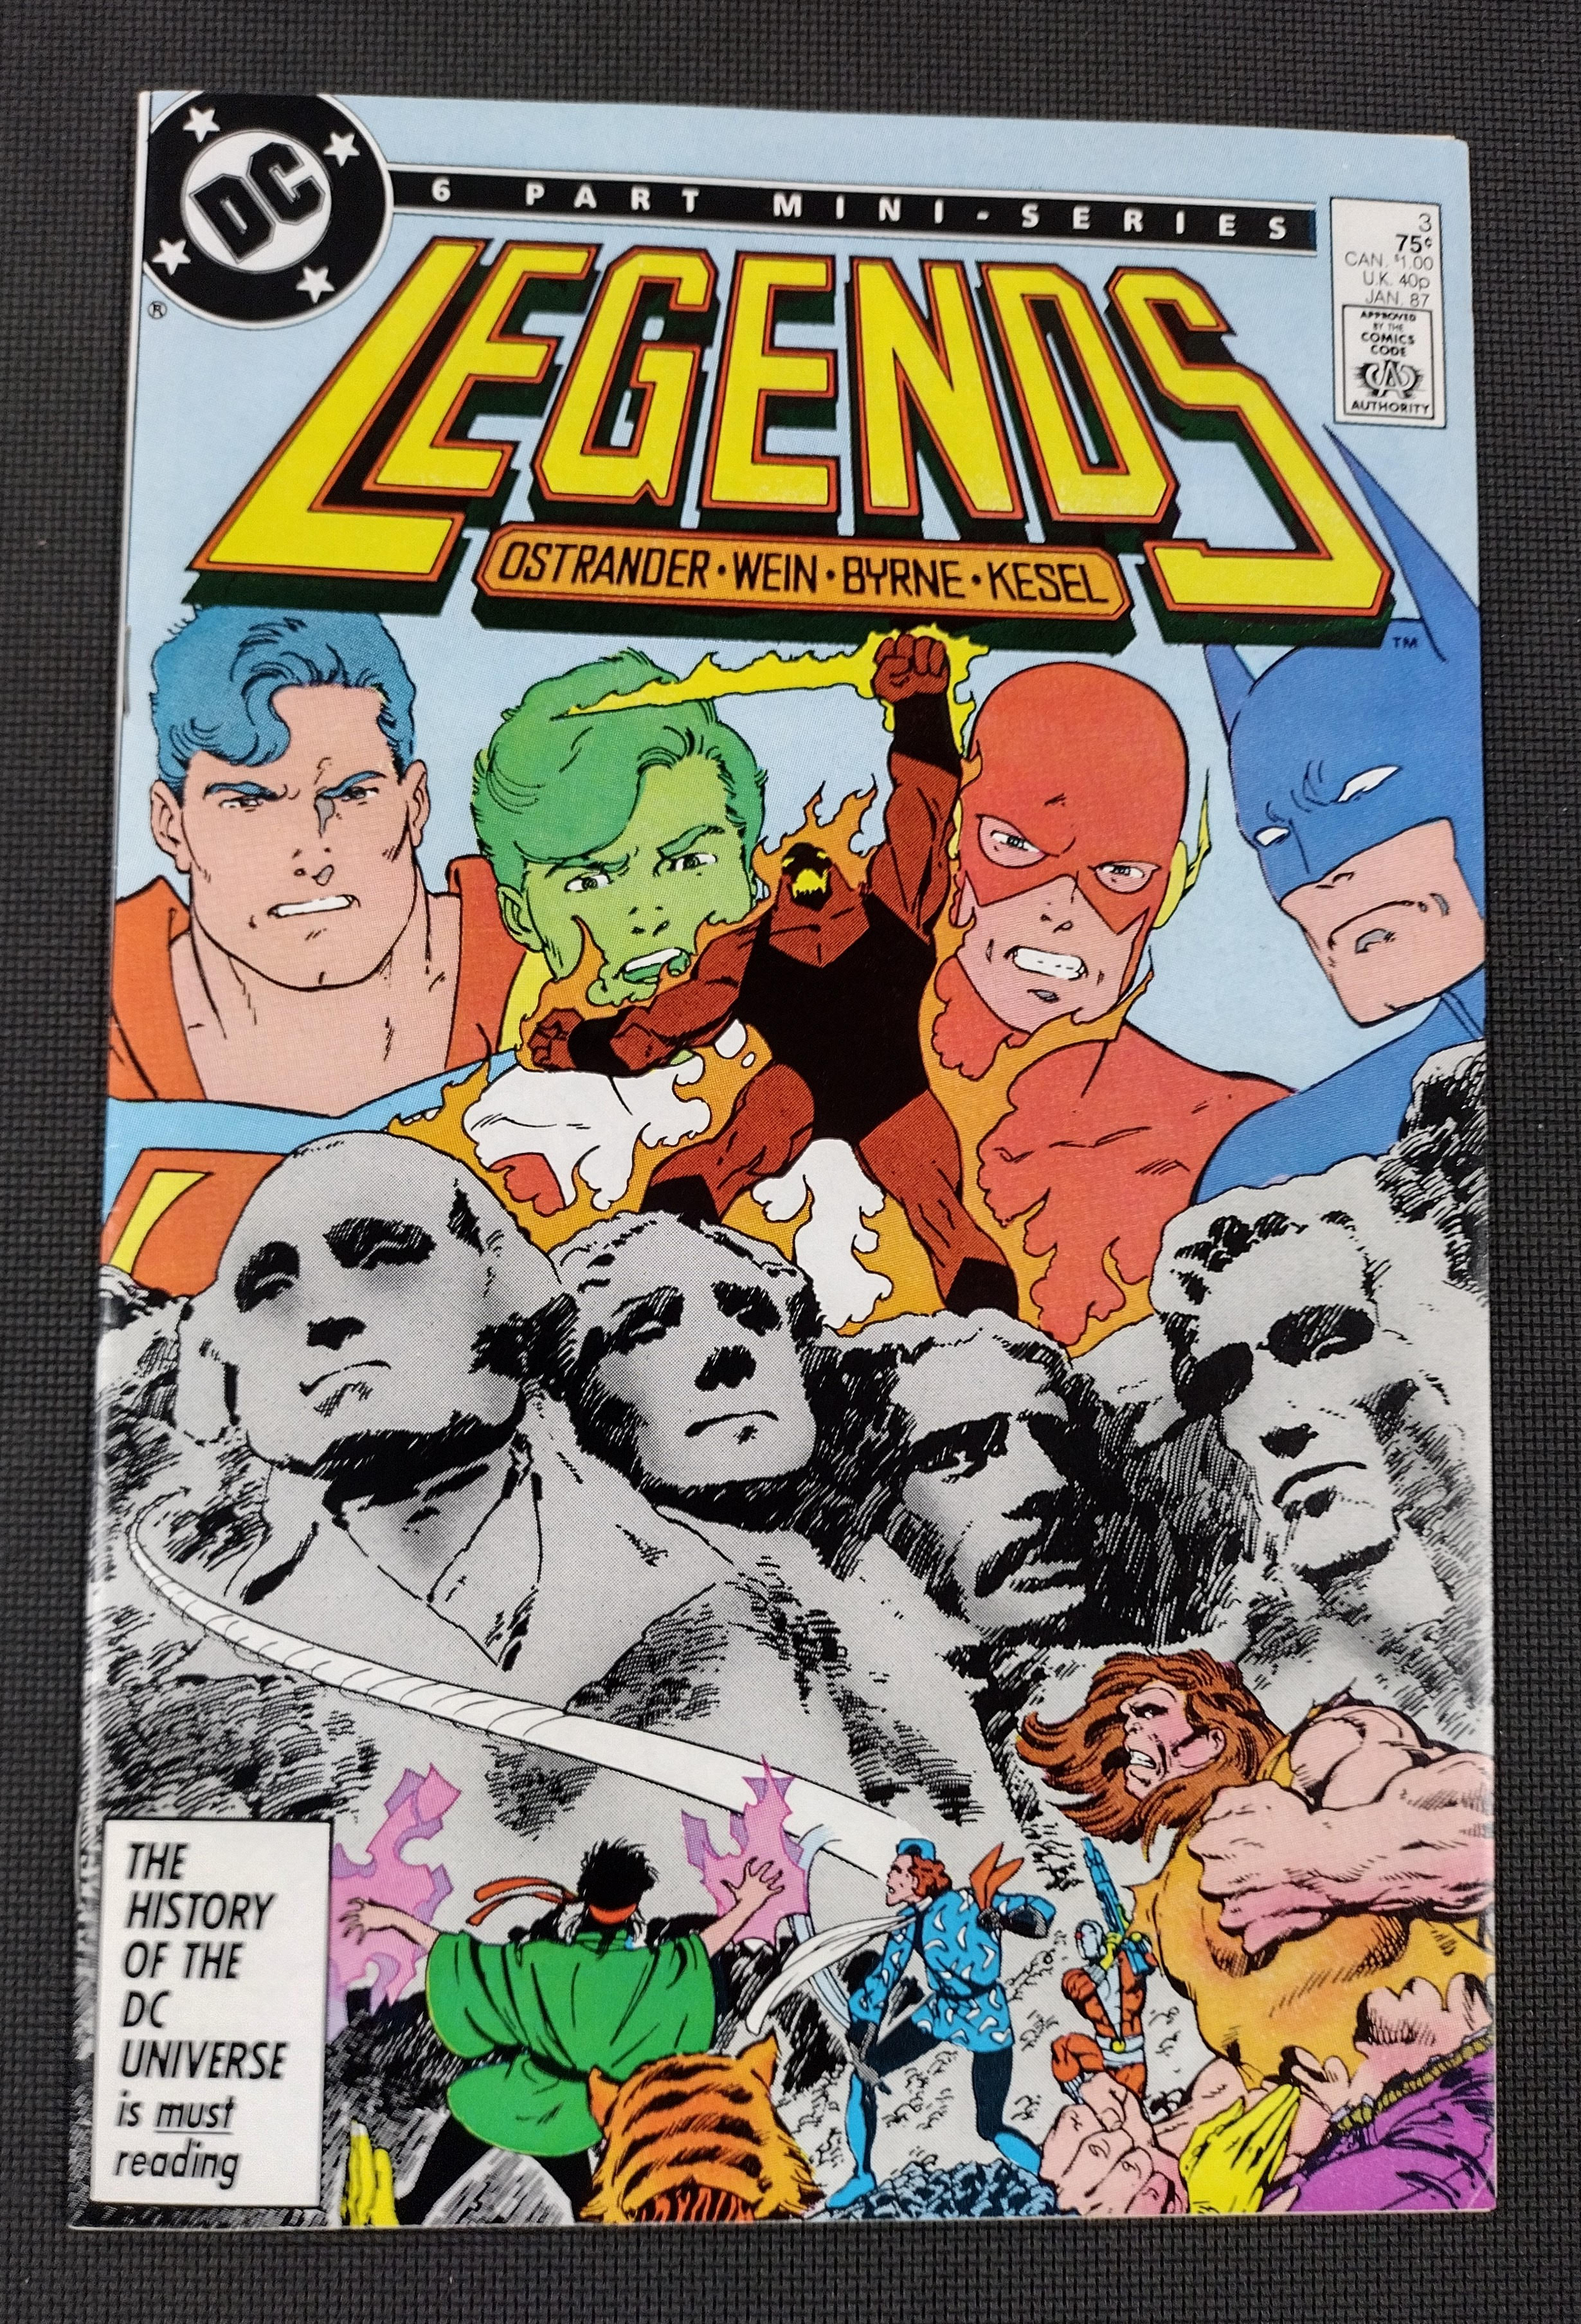 Legends #3 (1986 Dc)